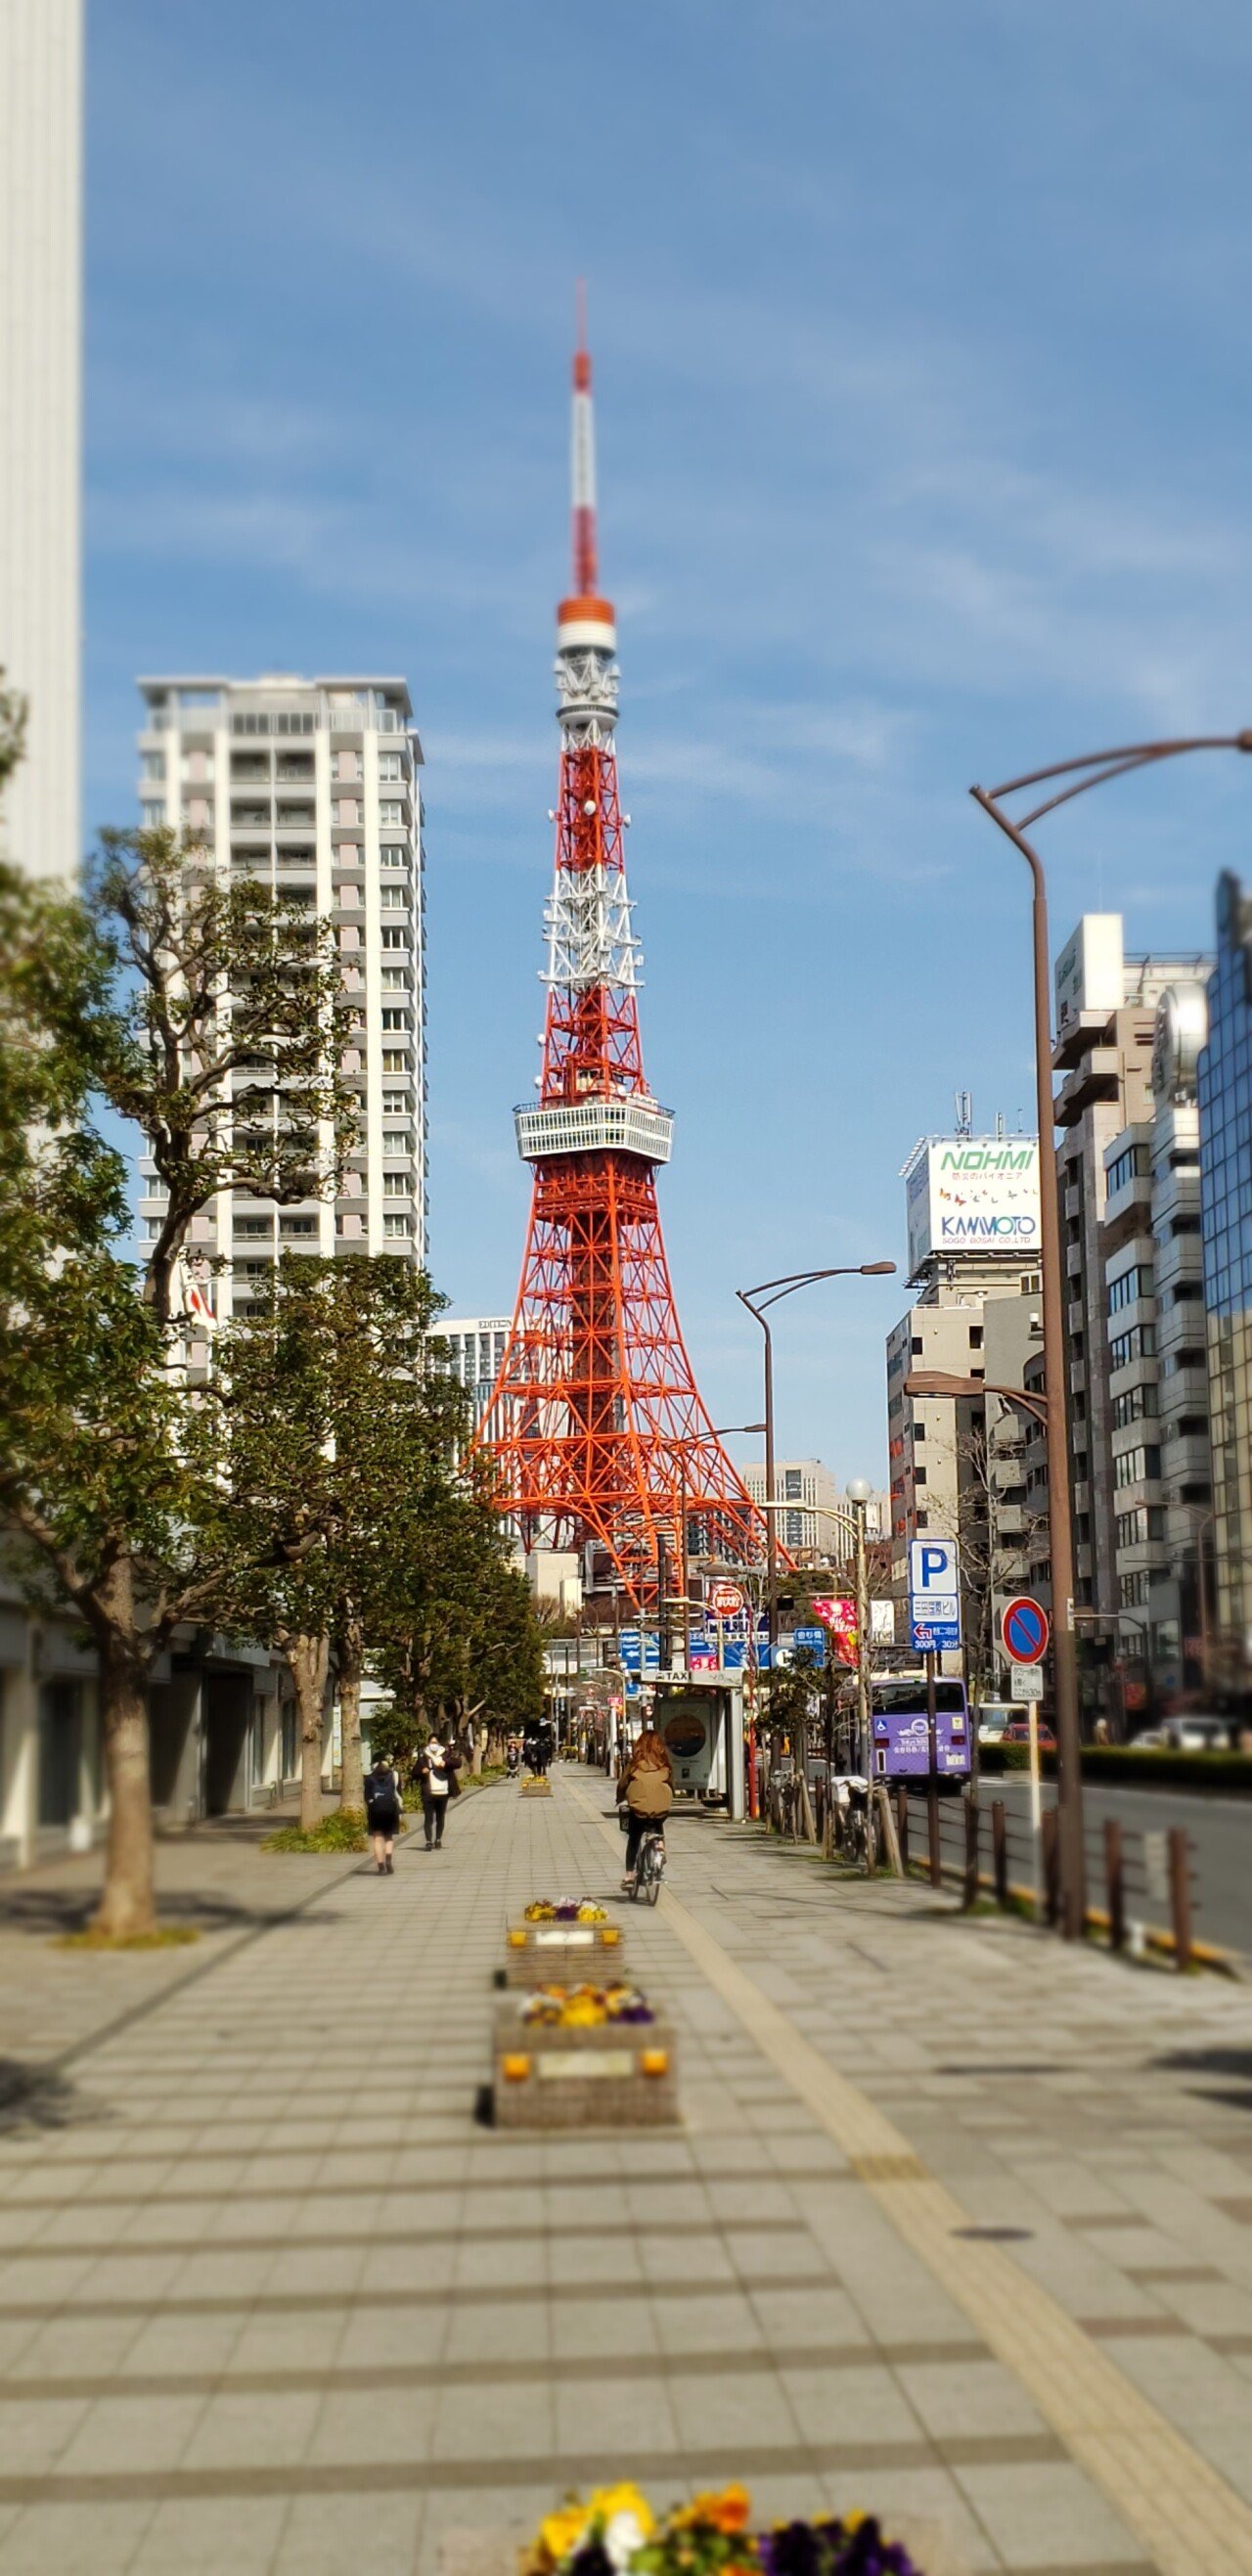 20210227_112329.jpg <도쿄 외노자> 봄날 기운 물씬 느껴지는 도쿄 길거리 풍경.jpg